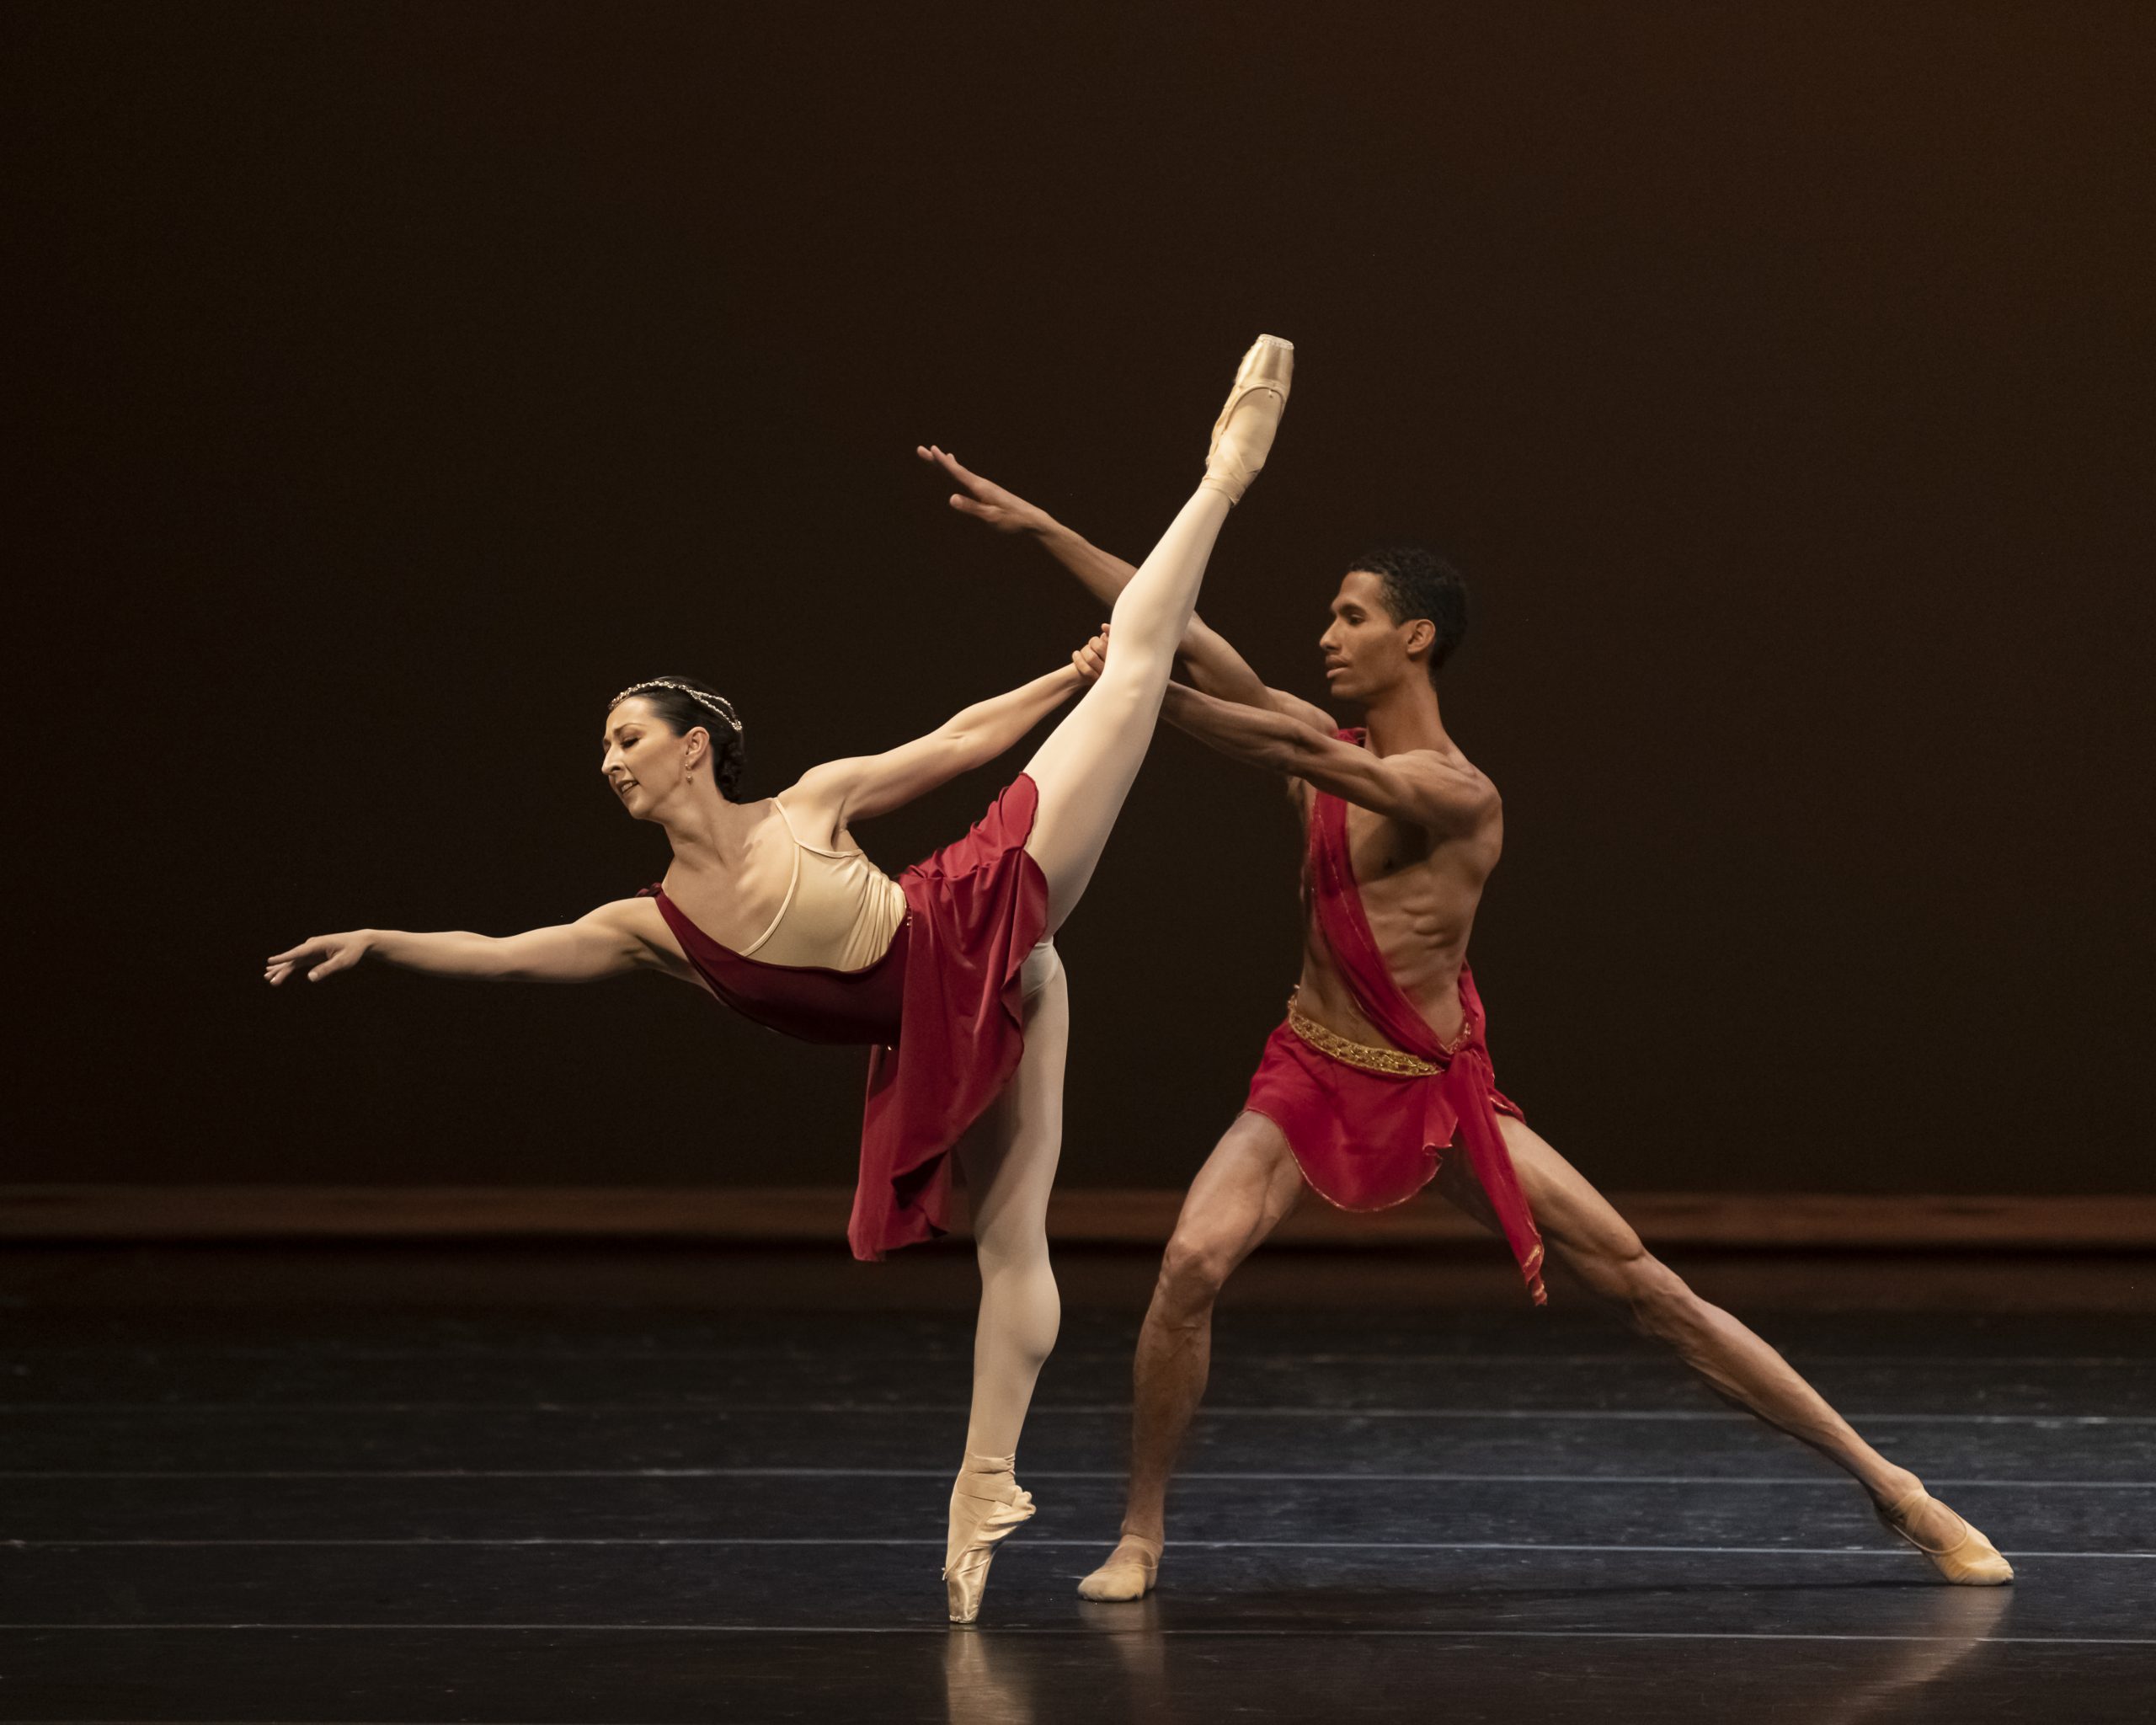 La Compañía Nacional de Danza ofrecerá Gala de ballet en la explanada de la alcaldía Benito Juárez